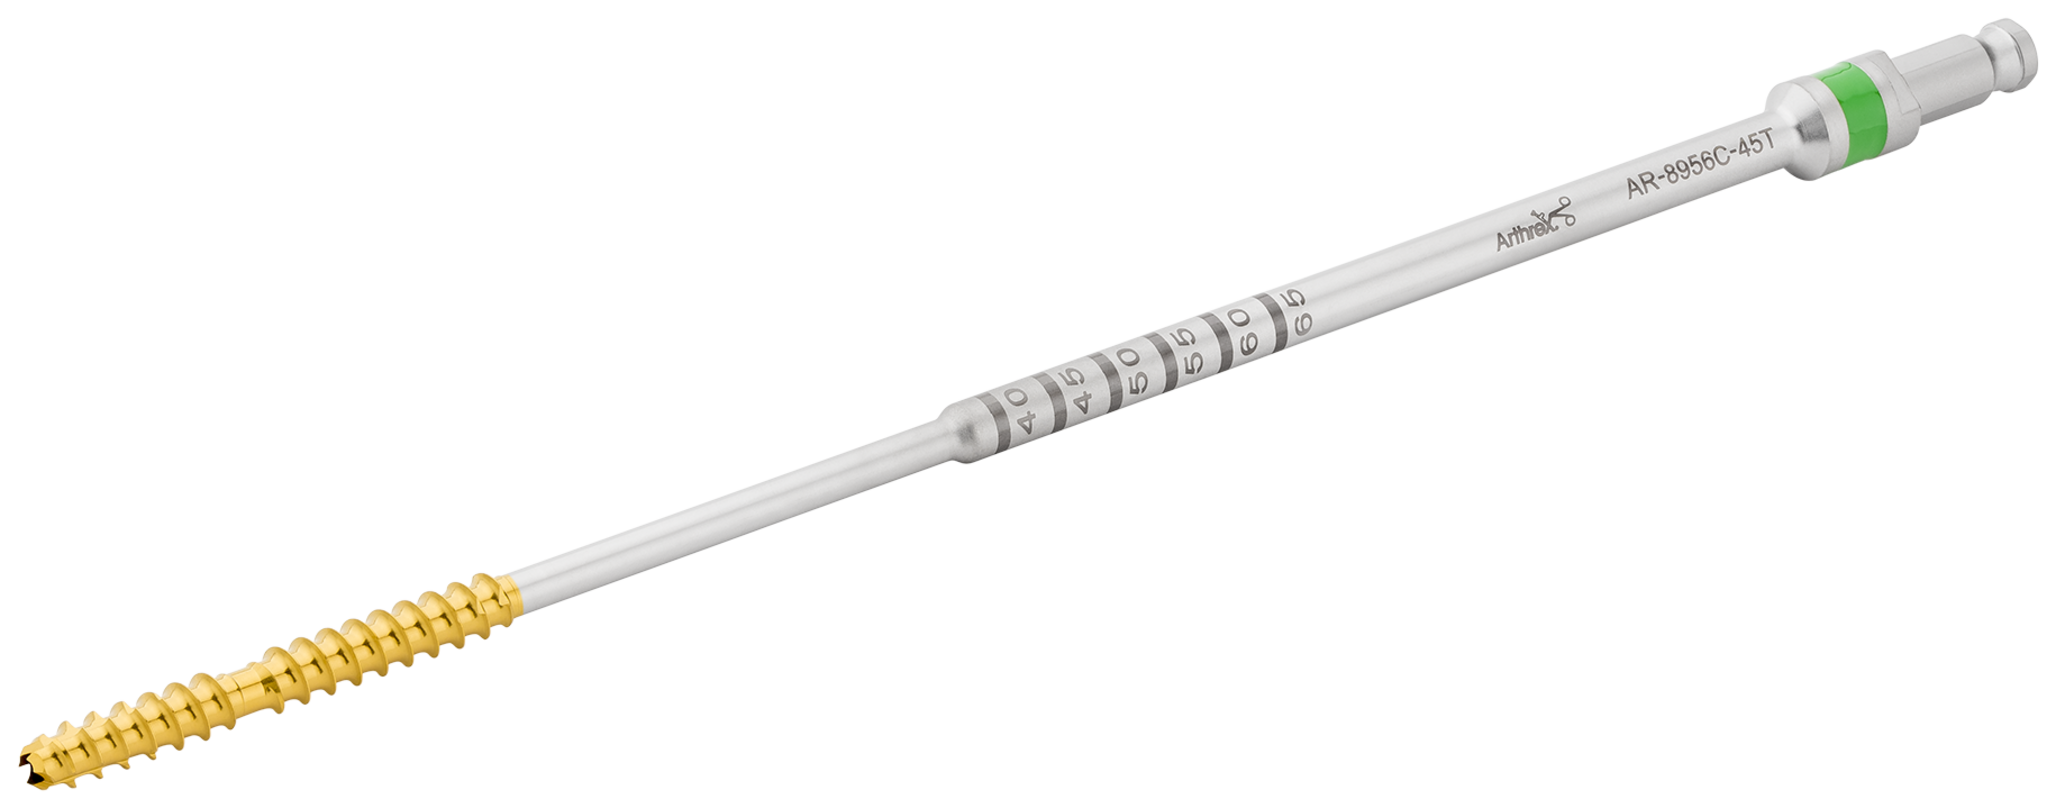 Arthrex - Bone Tap, Cannulated, 4.5 mm - AR-8956C-45T